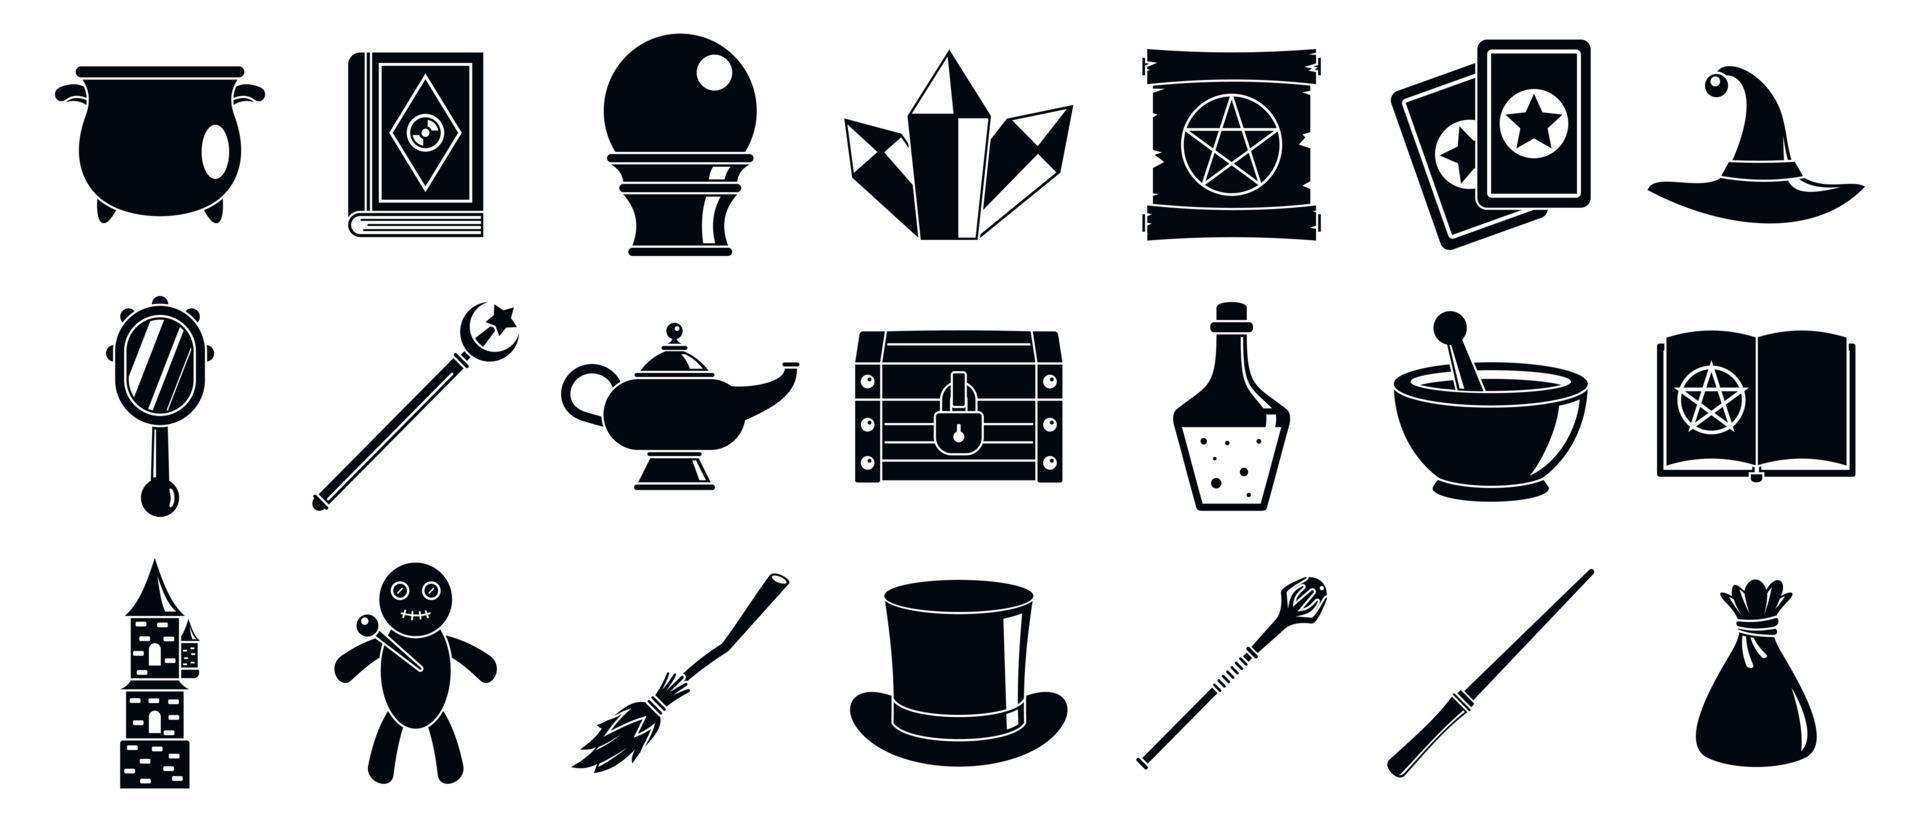 conjunto de ícones de ferramentas de assistente mágico, estilo simples vetor